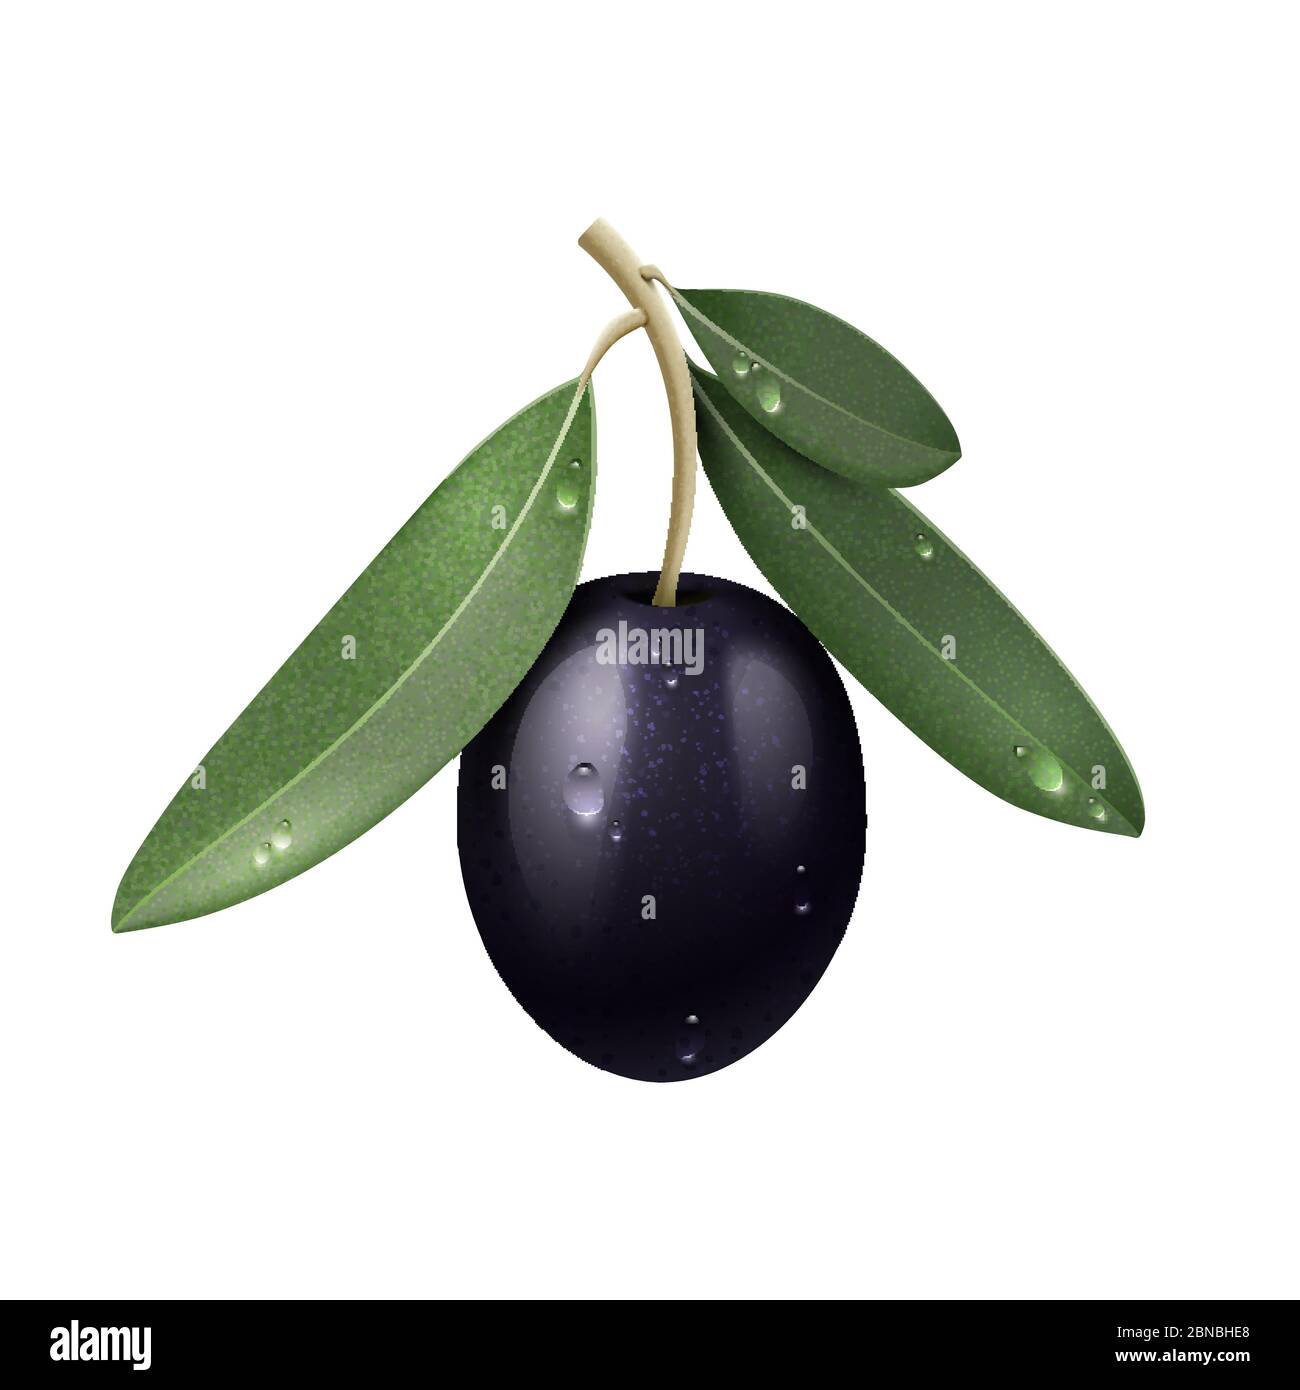 Branche d'olive noire réaliste Vector avec feuilles vertes et gouttes d'eau isolées Illustration de Vecteur